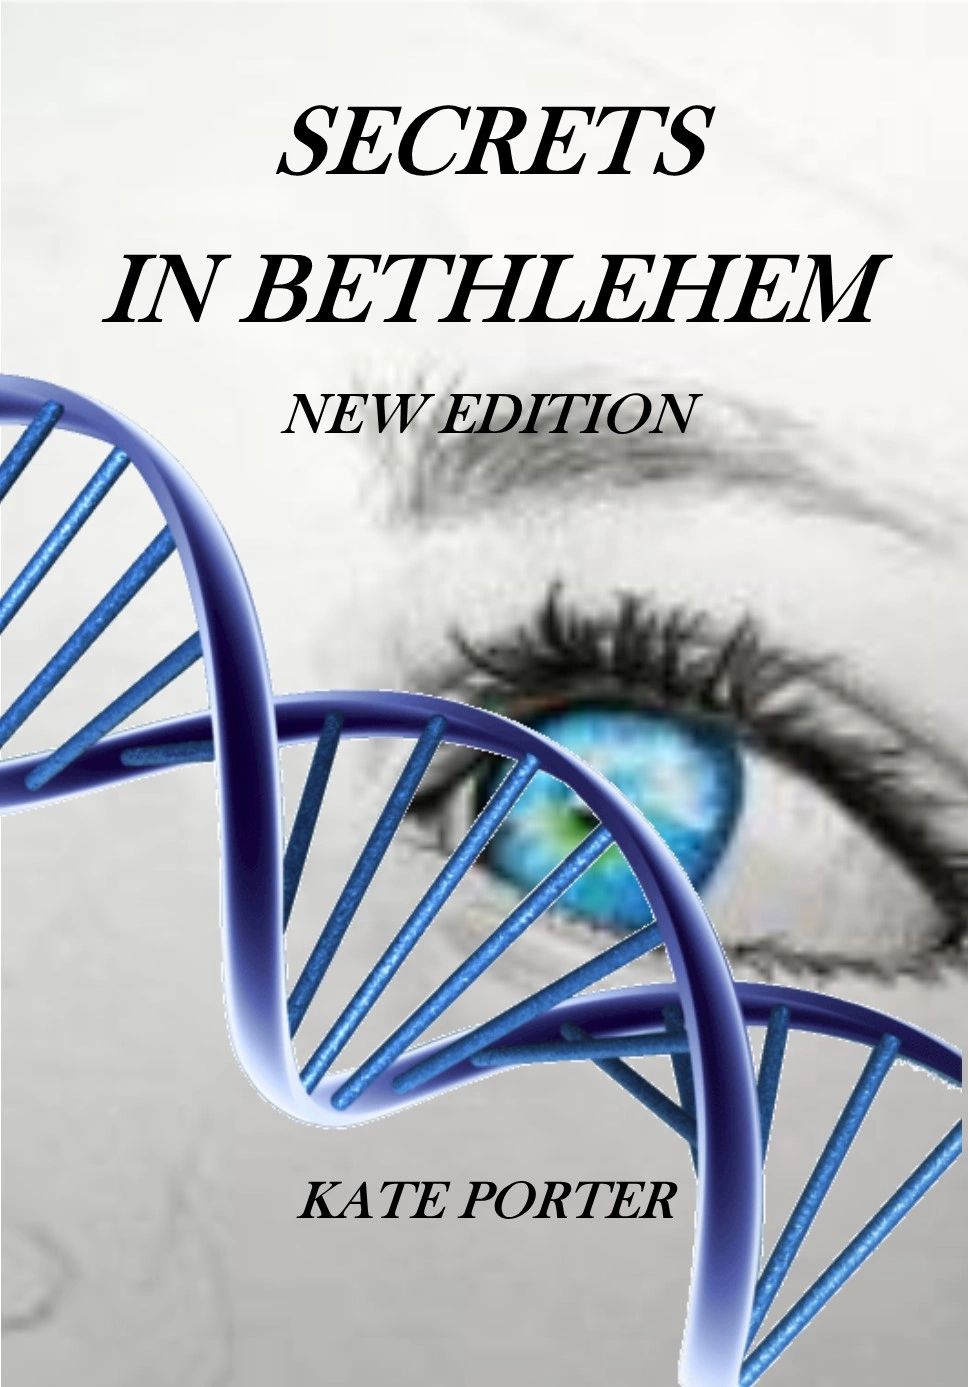  Secrets in Bethlehem